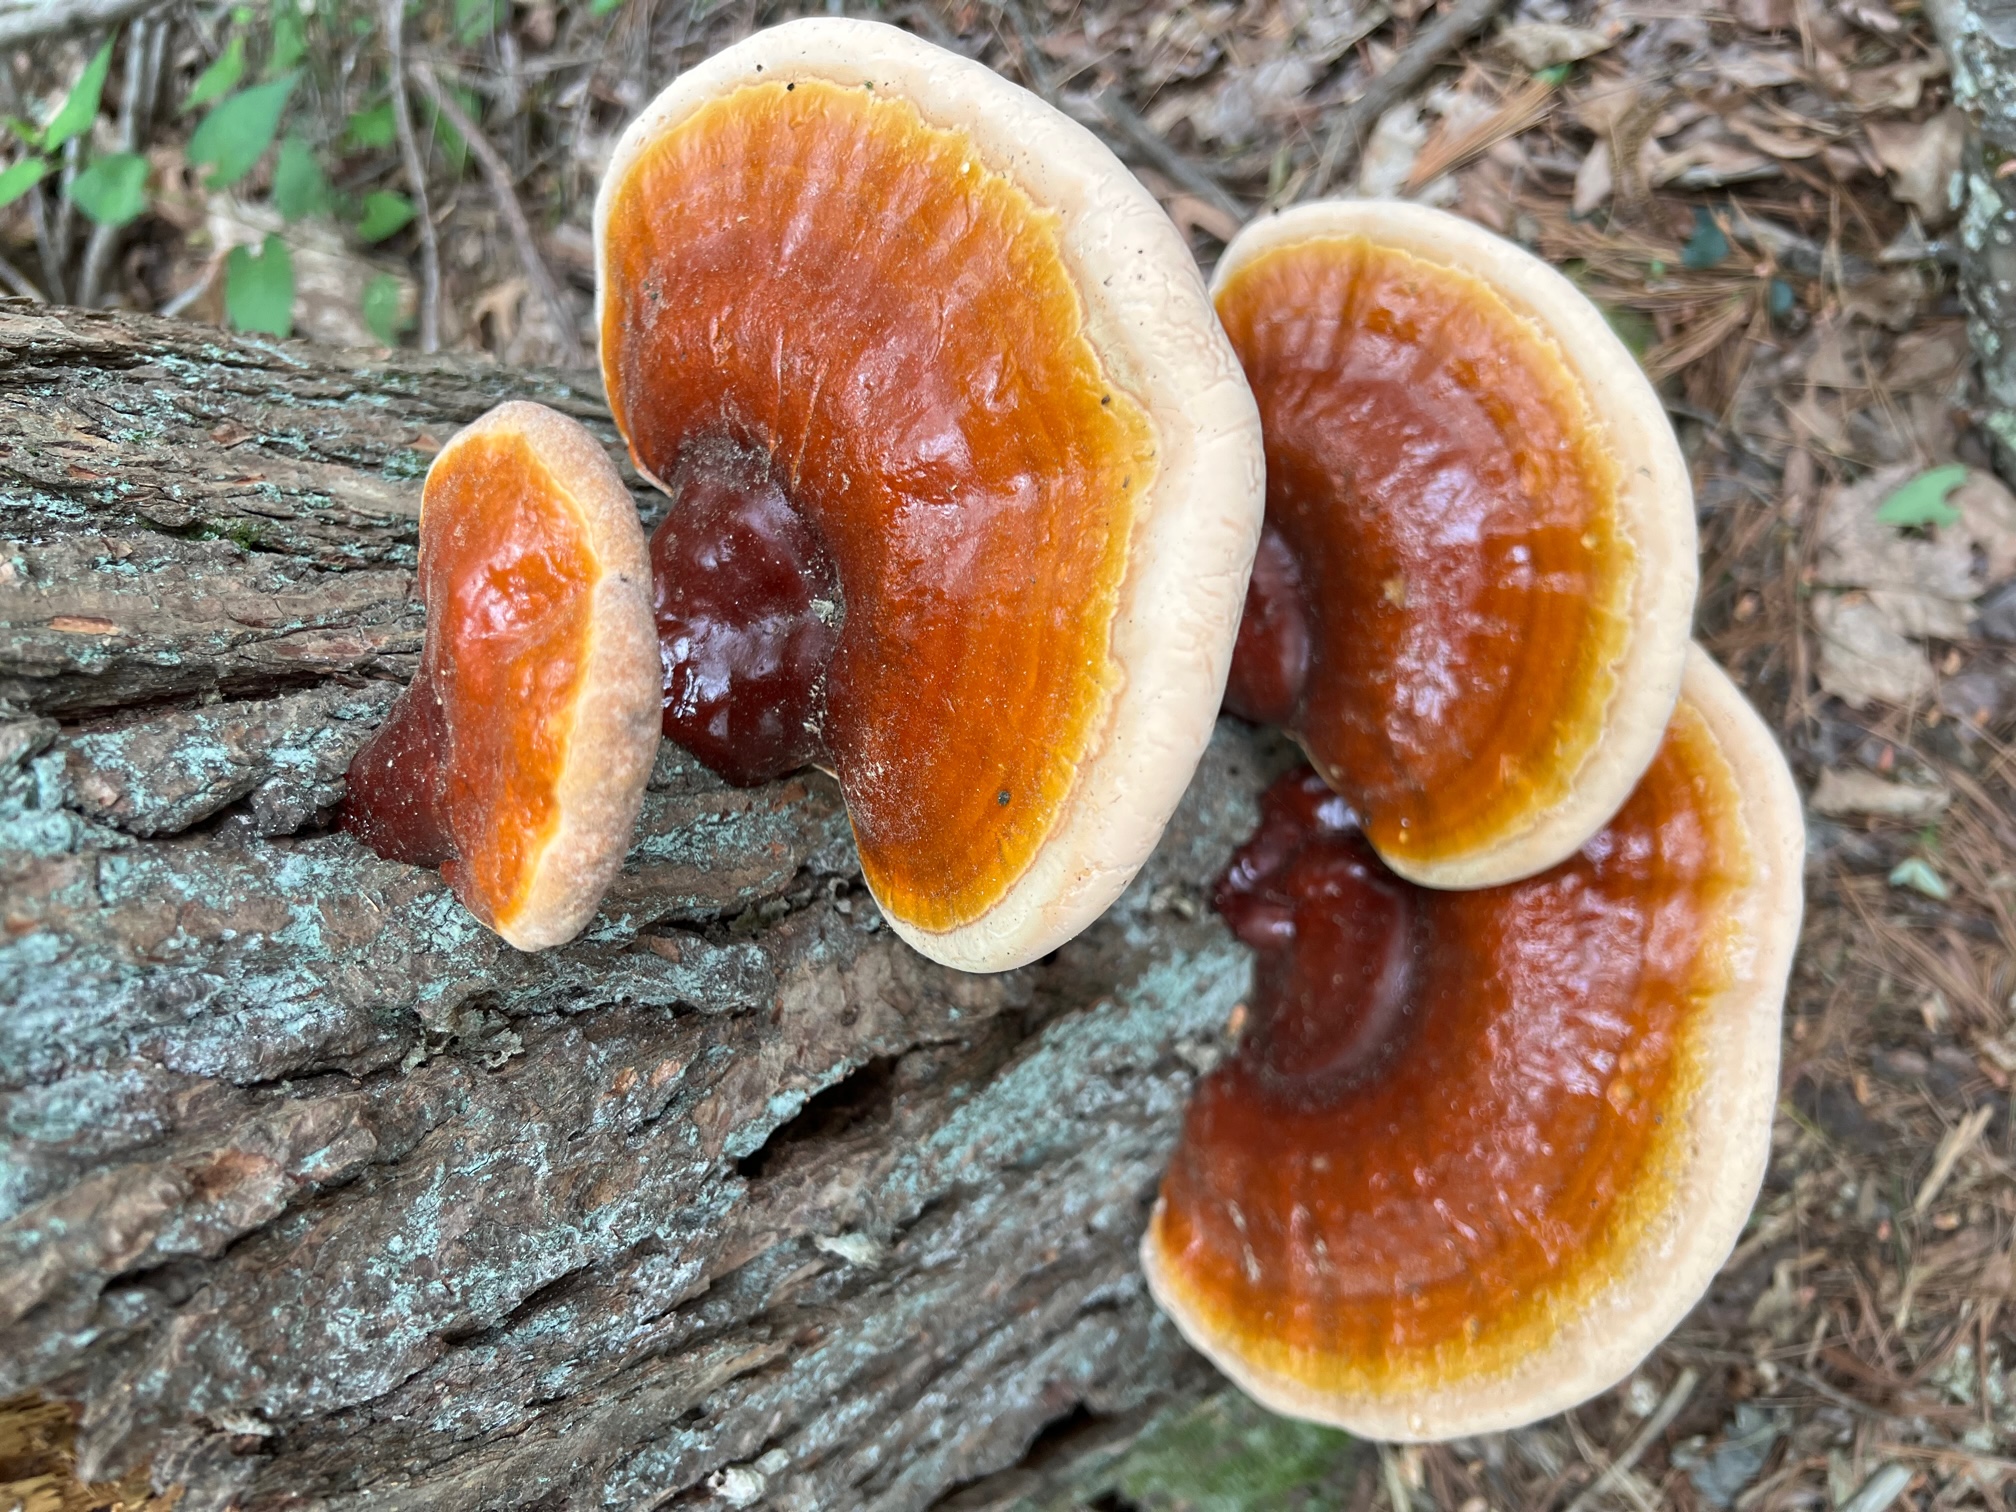 Futures in Fungi